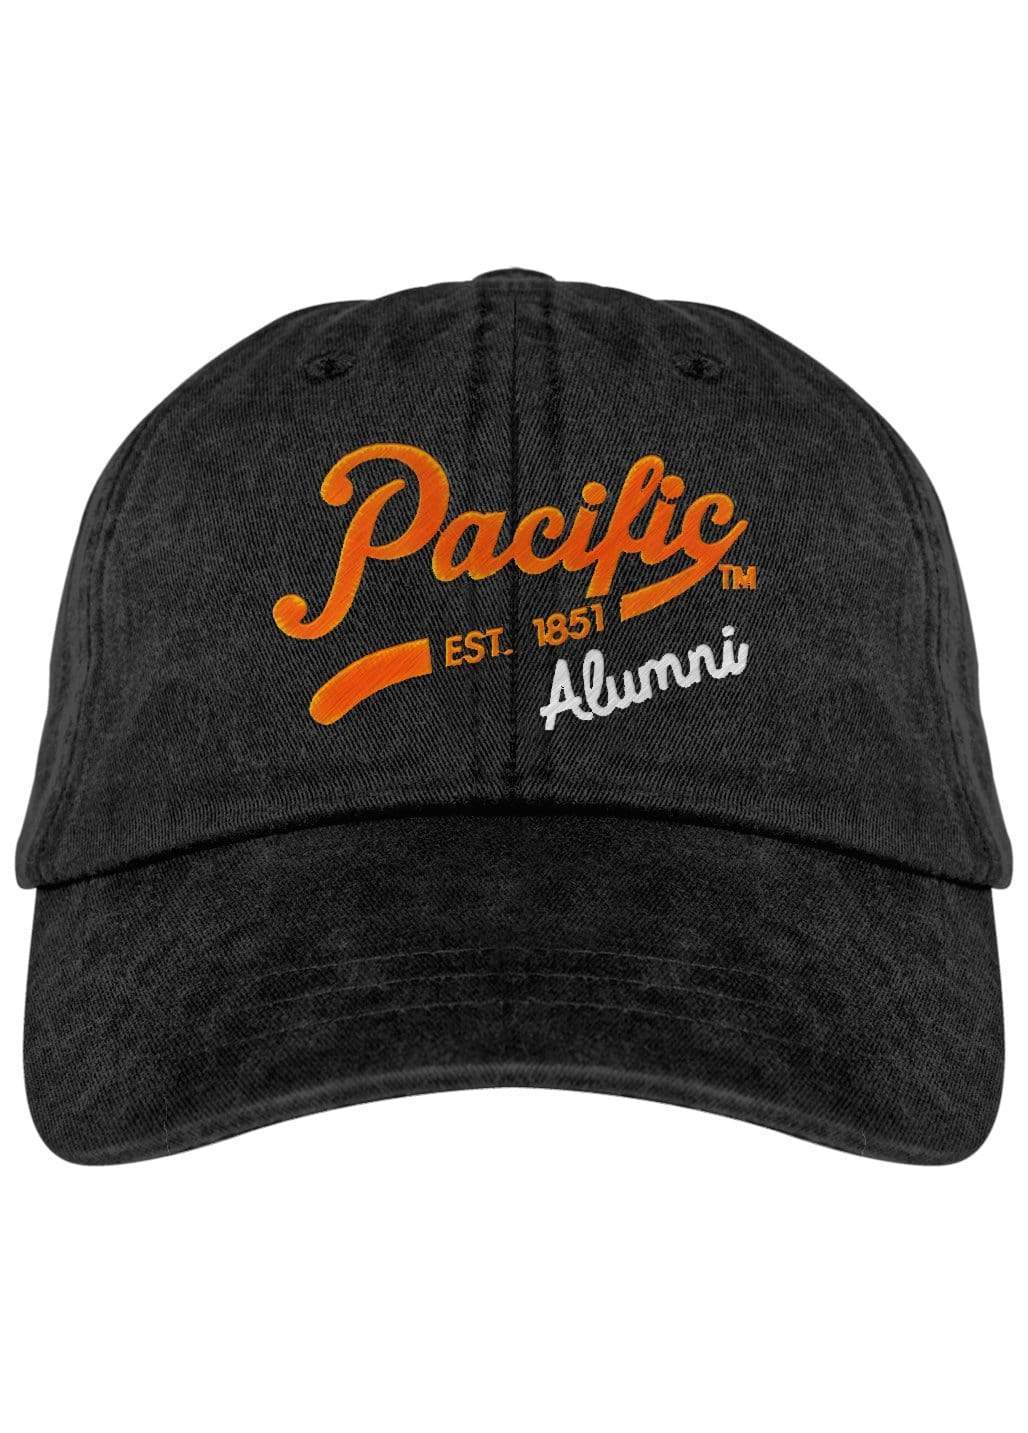 University of the Pacific Tigers Pacific Alumni Spirit Fadeaway Cap Hat by Zeus Collegiate